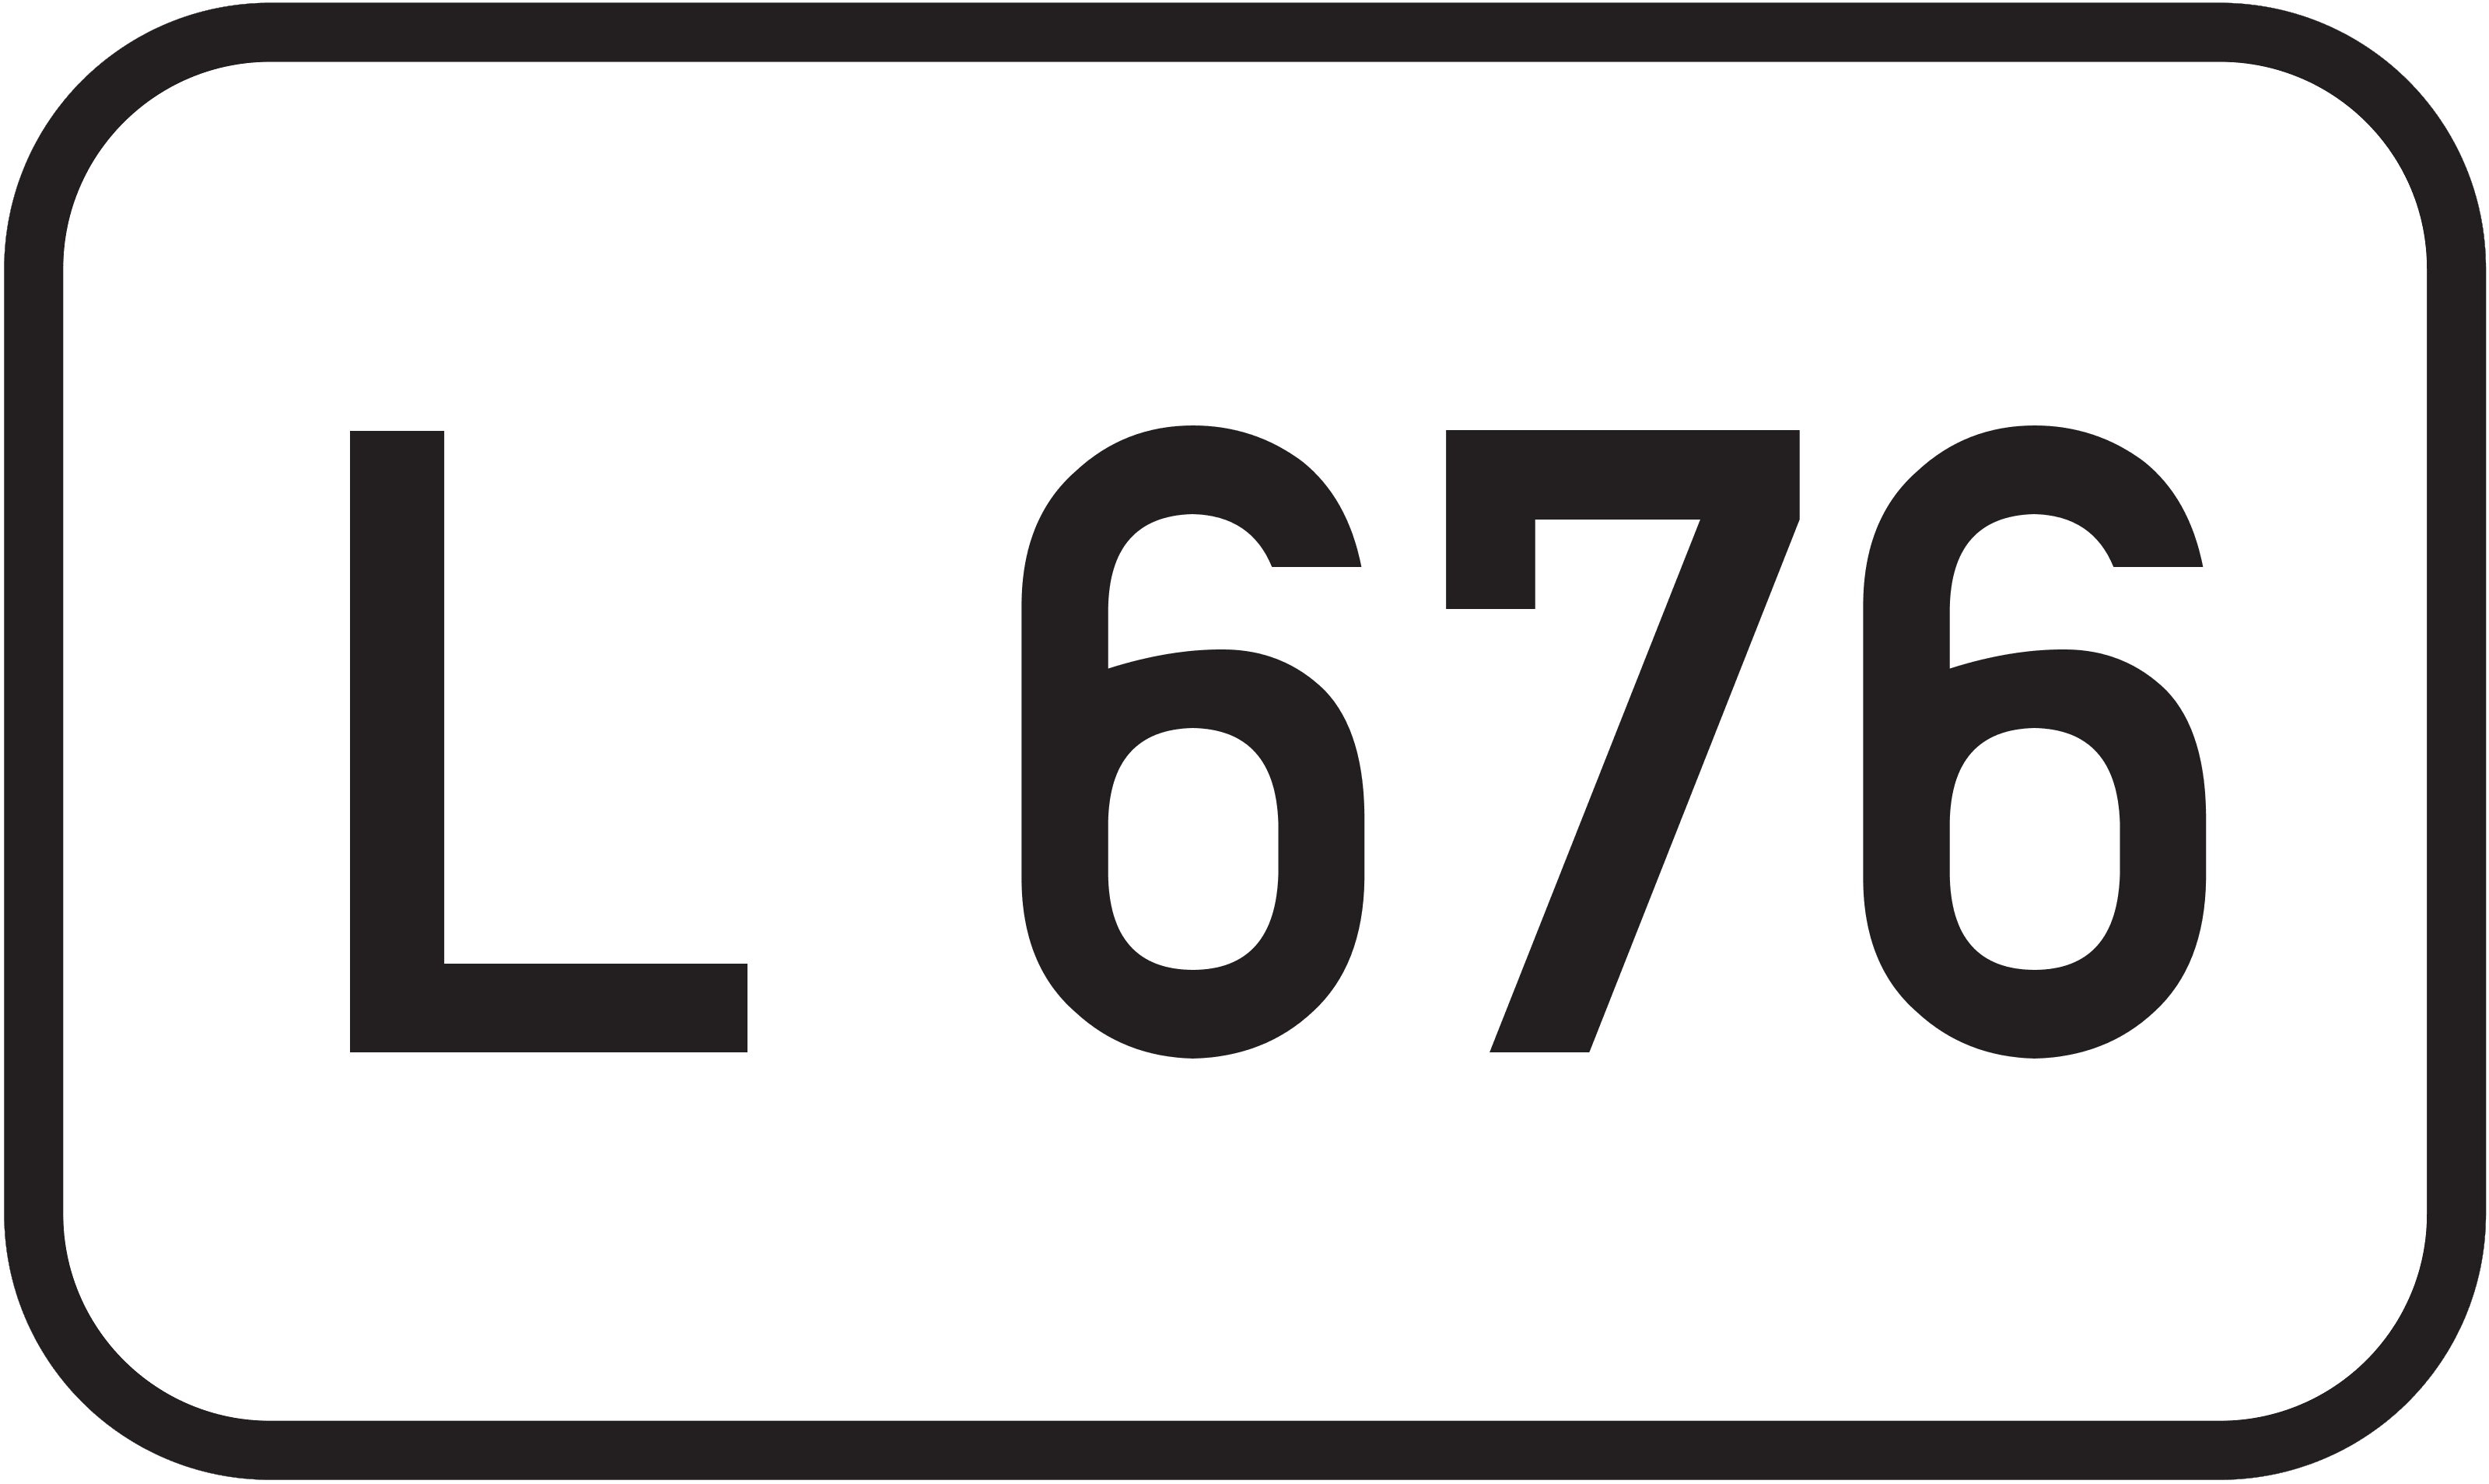 Landesstraße L 676